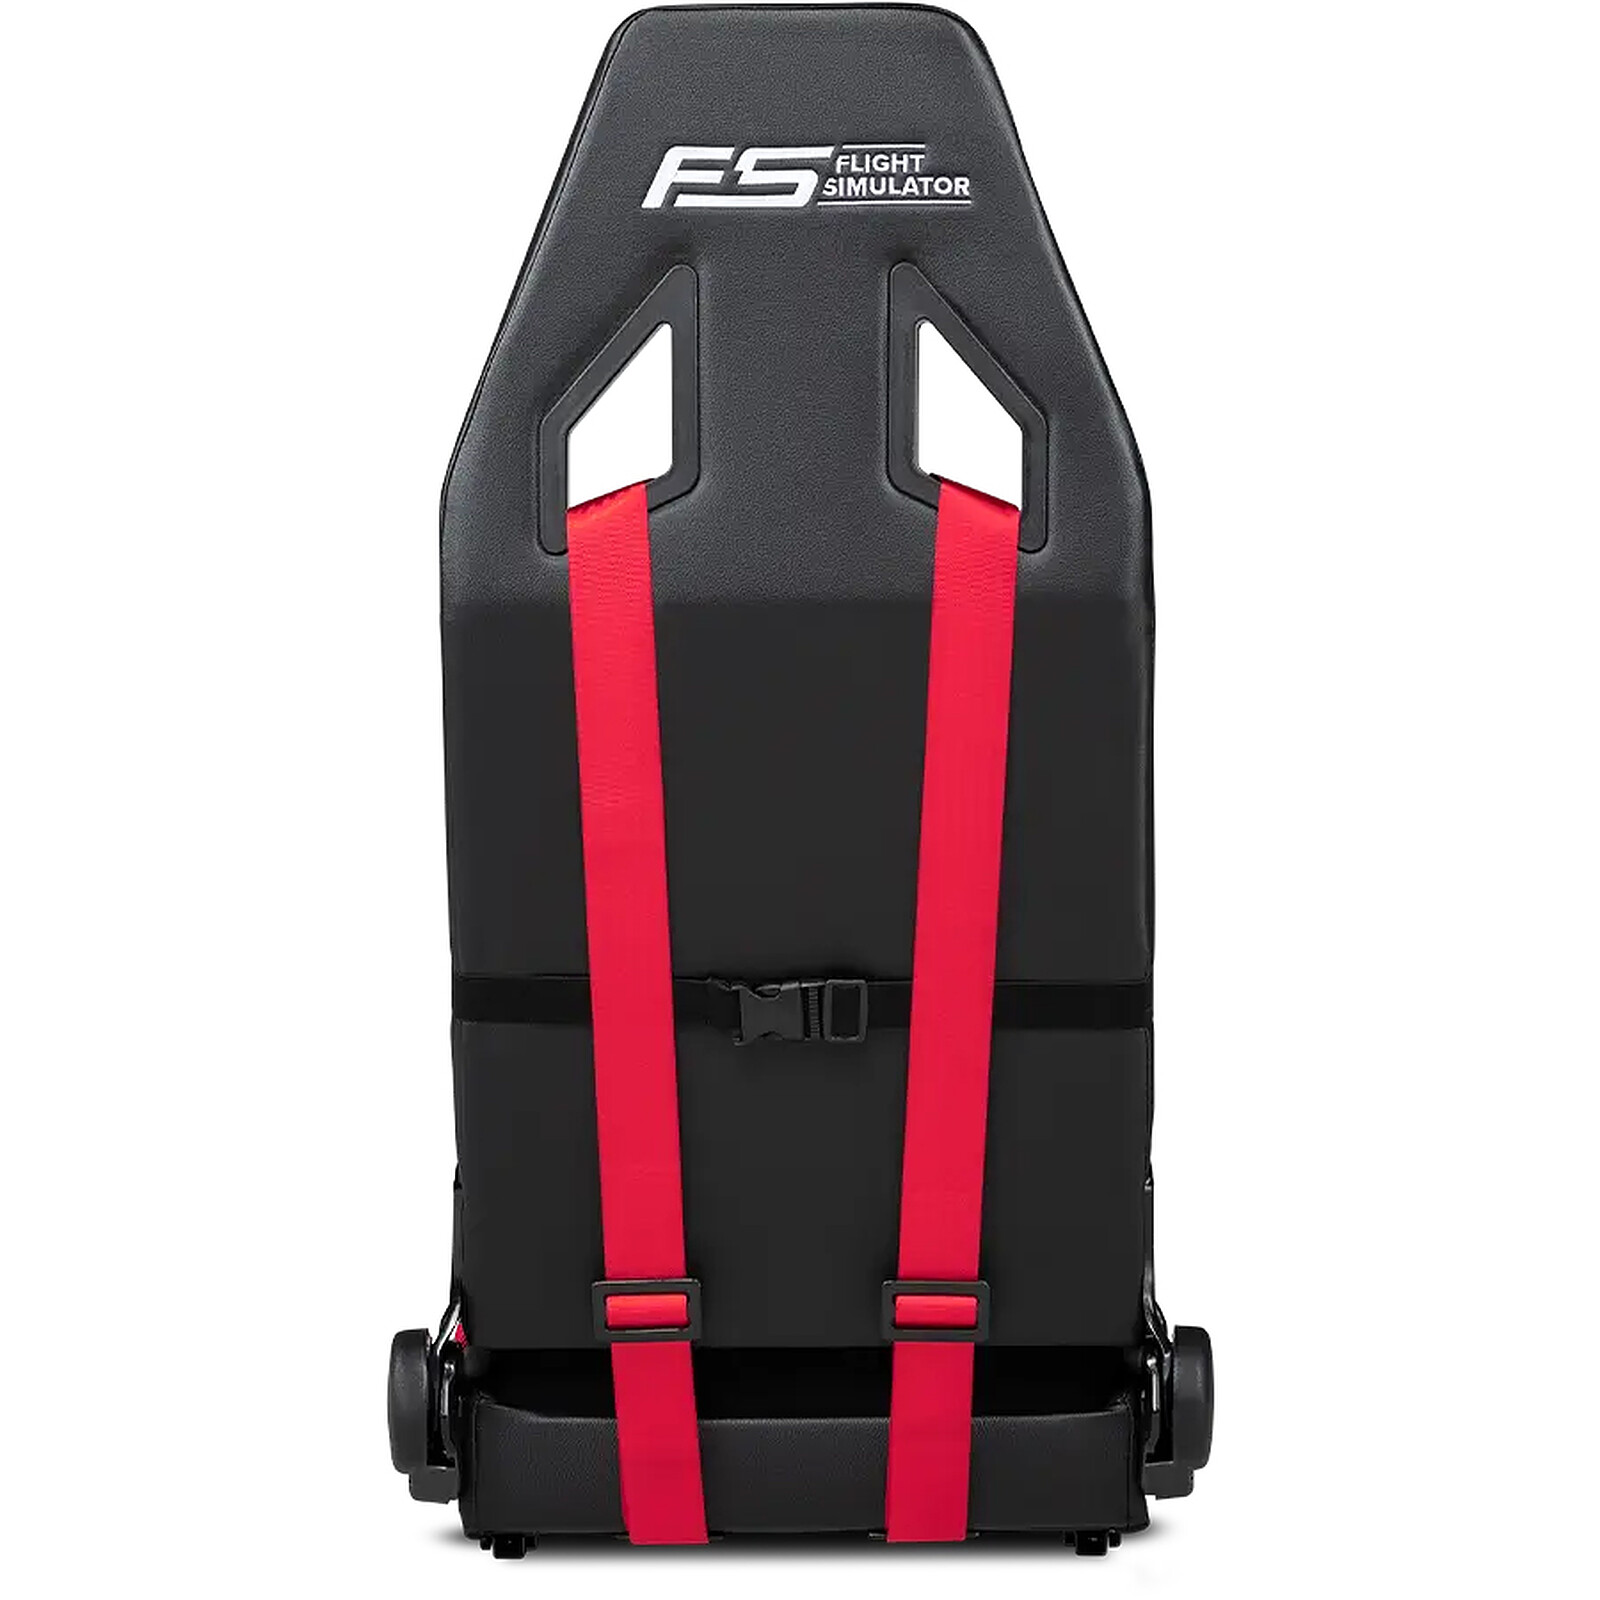 OPLITE GTR S8 Elite Rouge - Autres accessoires jeu - Garantie 3 ans LDLC